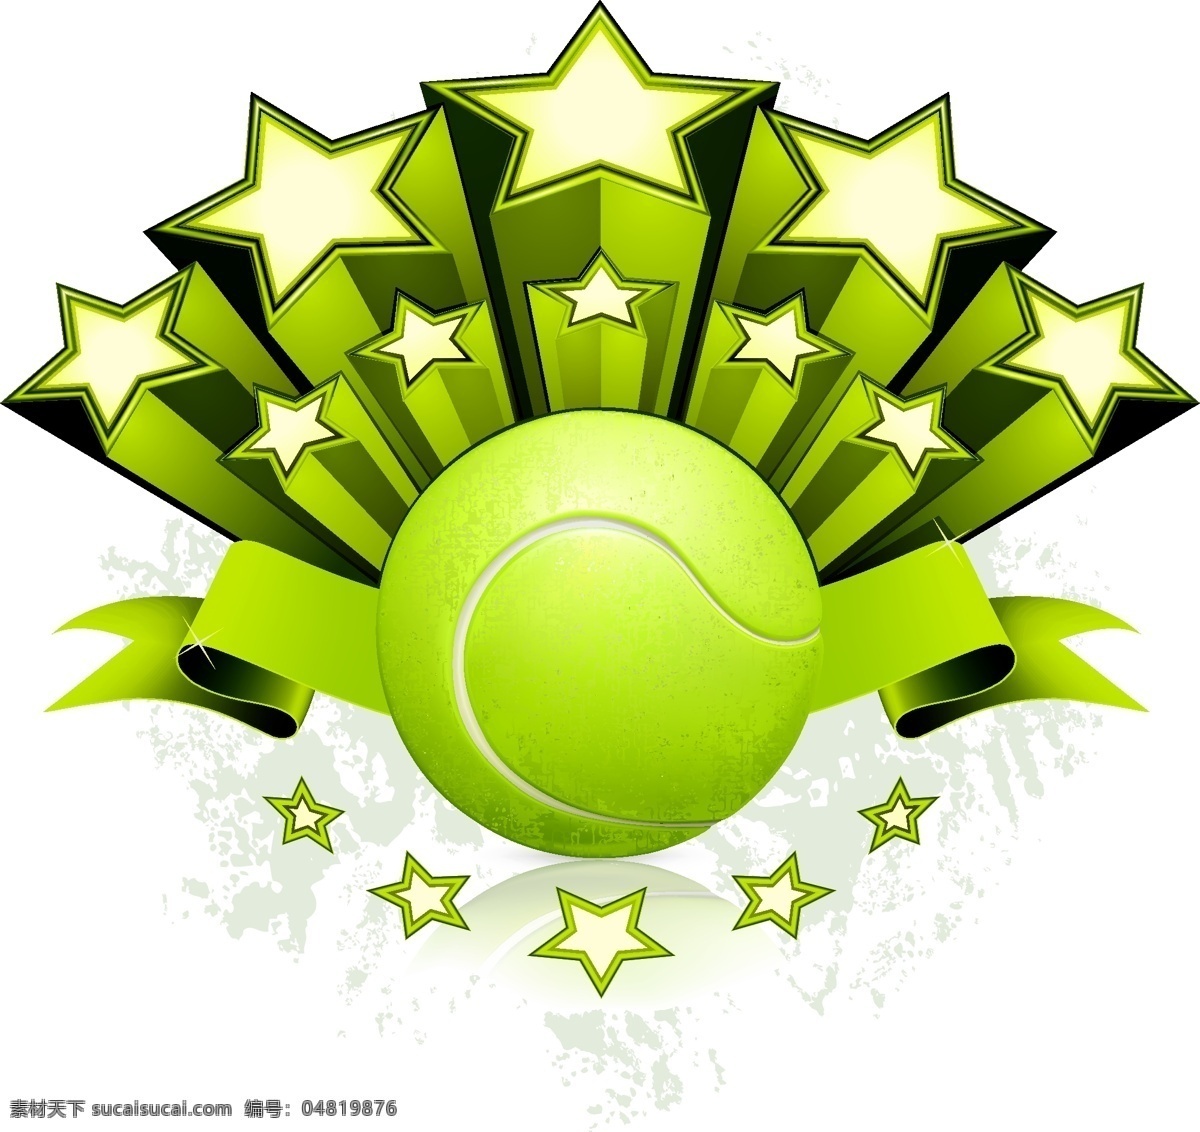 立体 五角星 网球 网球运动 立体星星 体育运动 体育项目 生活百科 矢量素材 白色